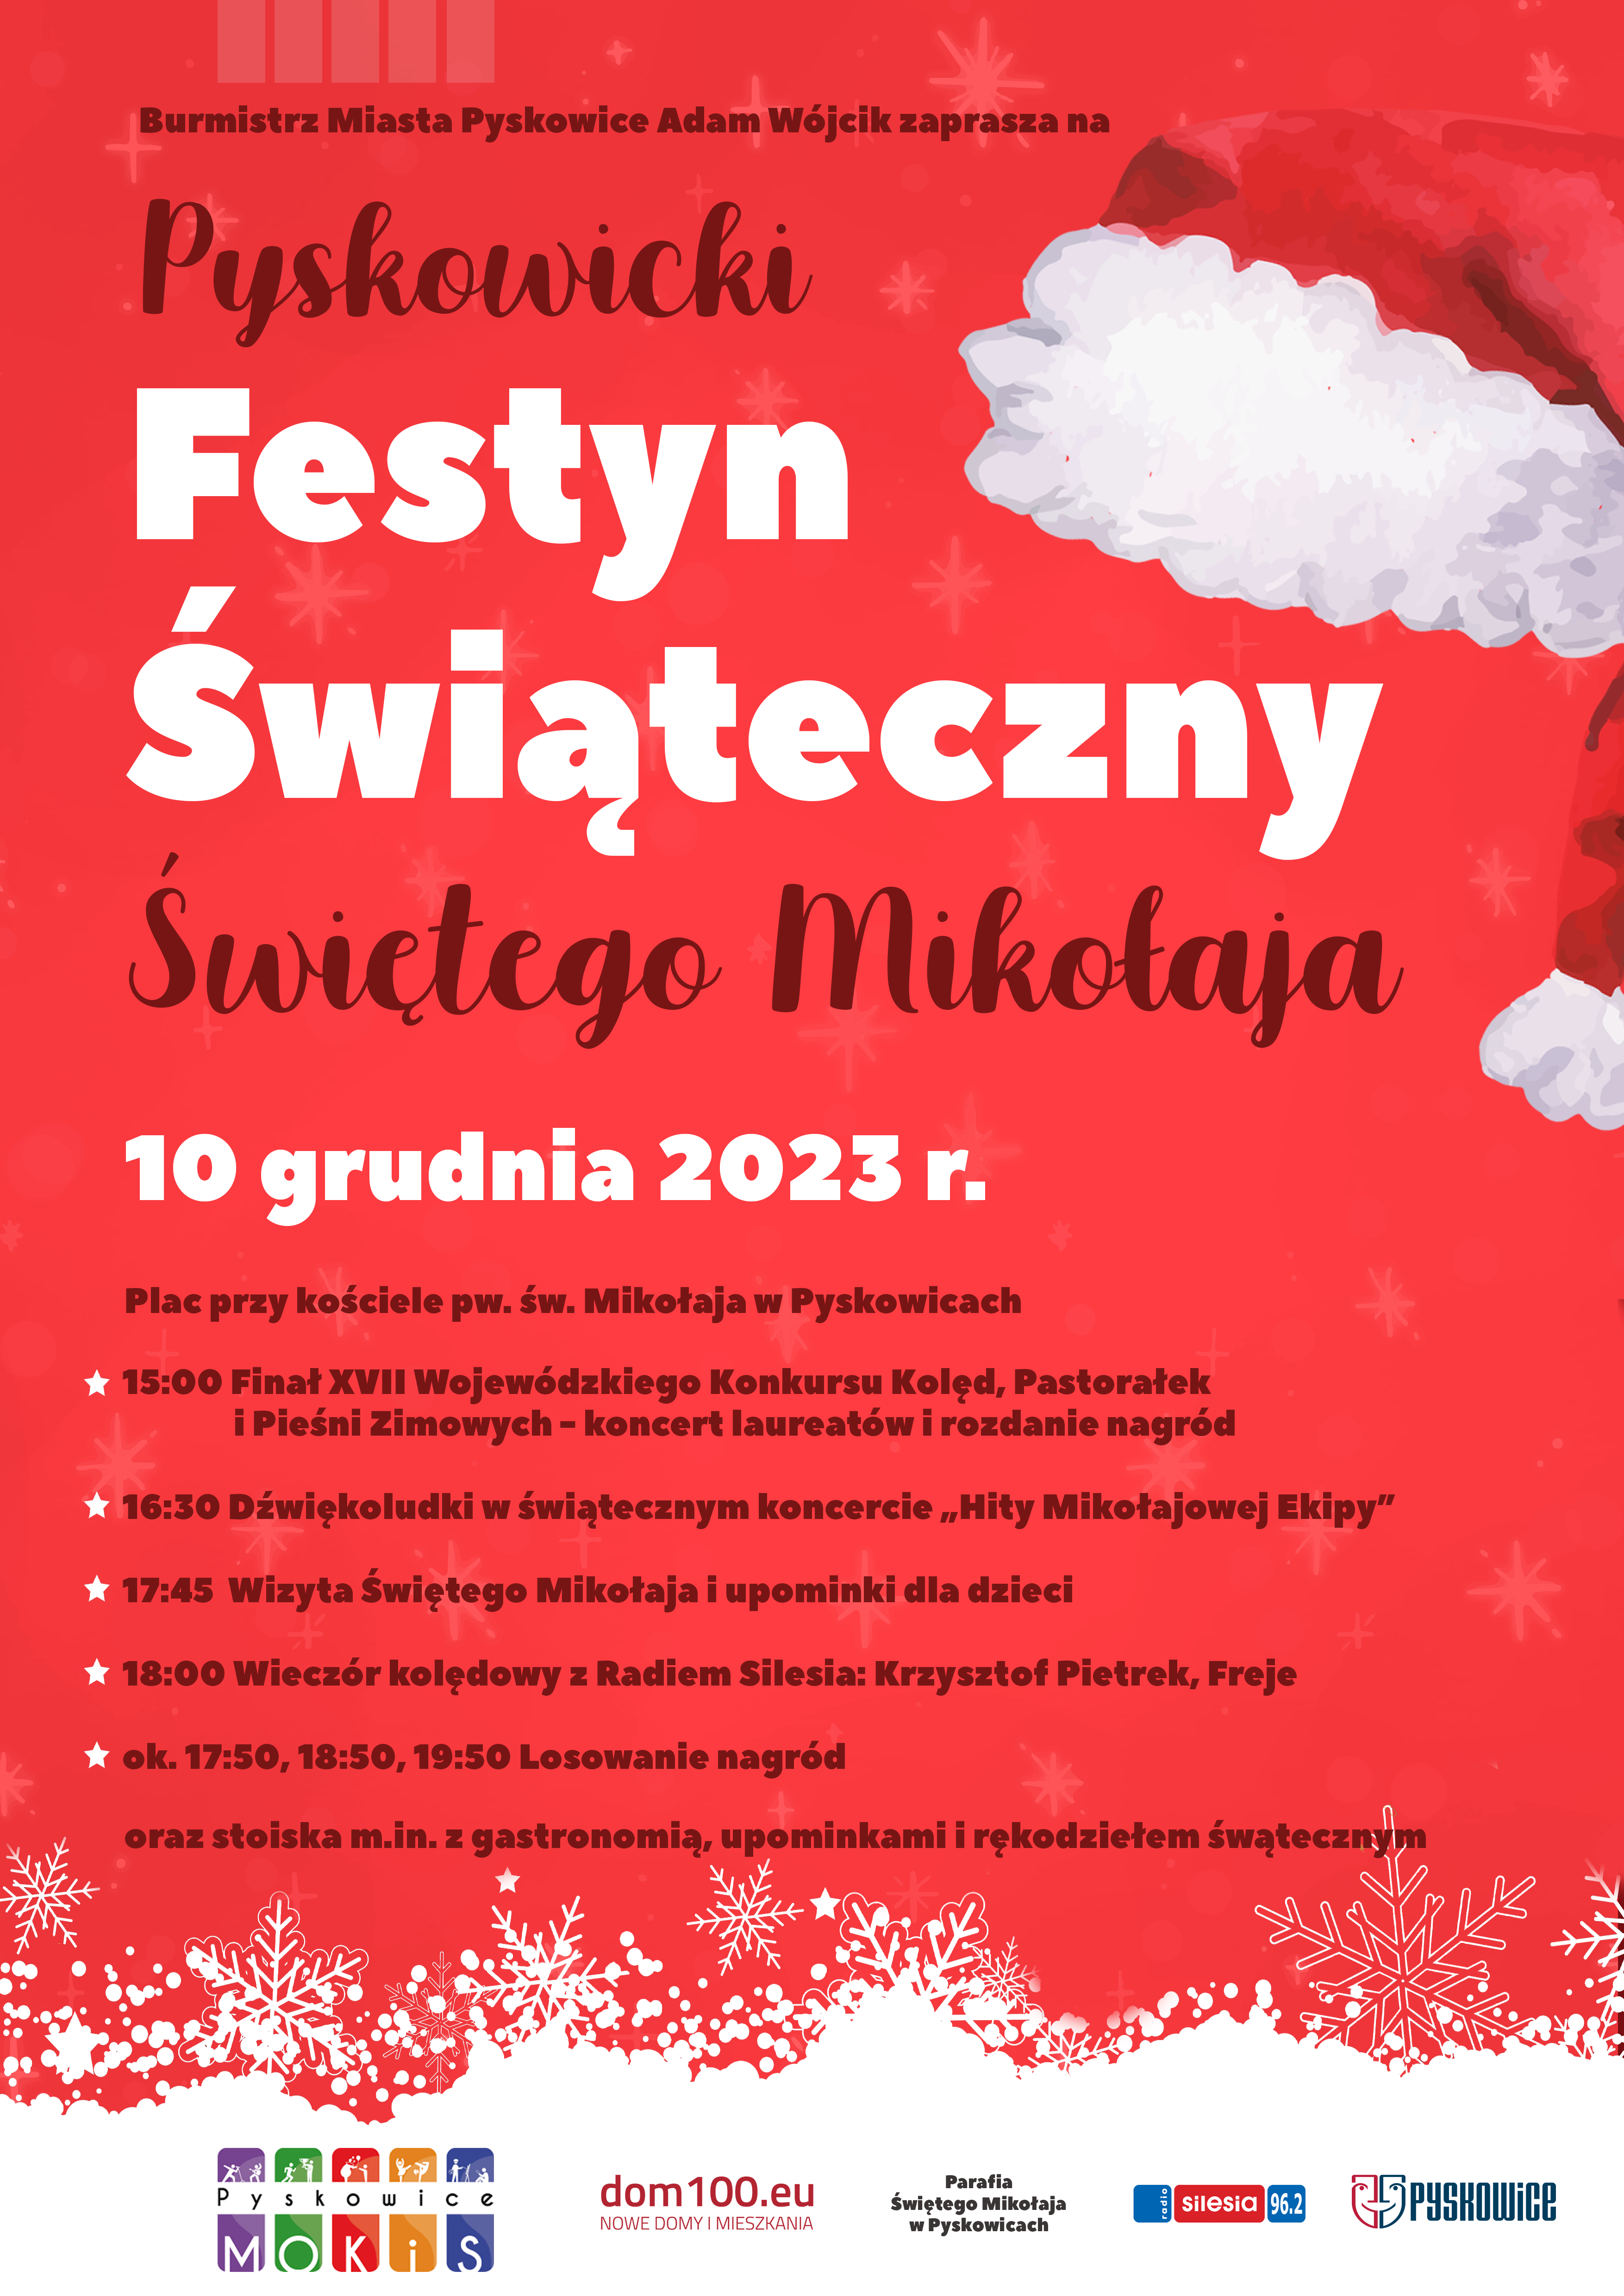 Plakat promujący festyn Świąteczny Świętego Mikołaja